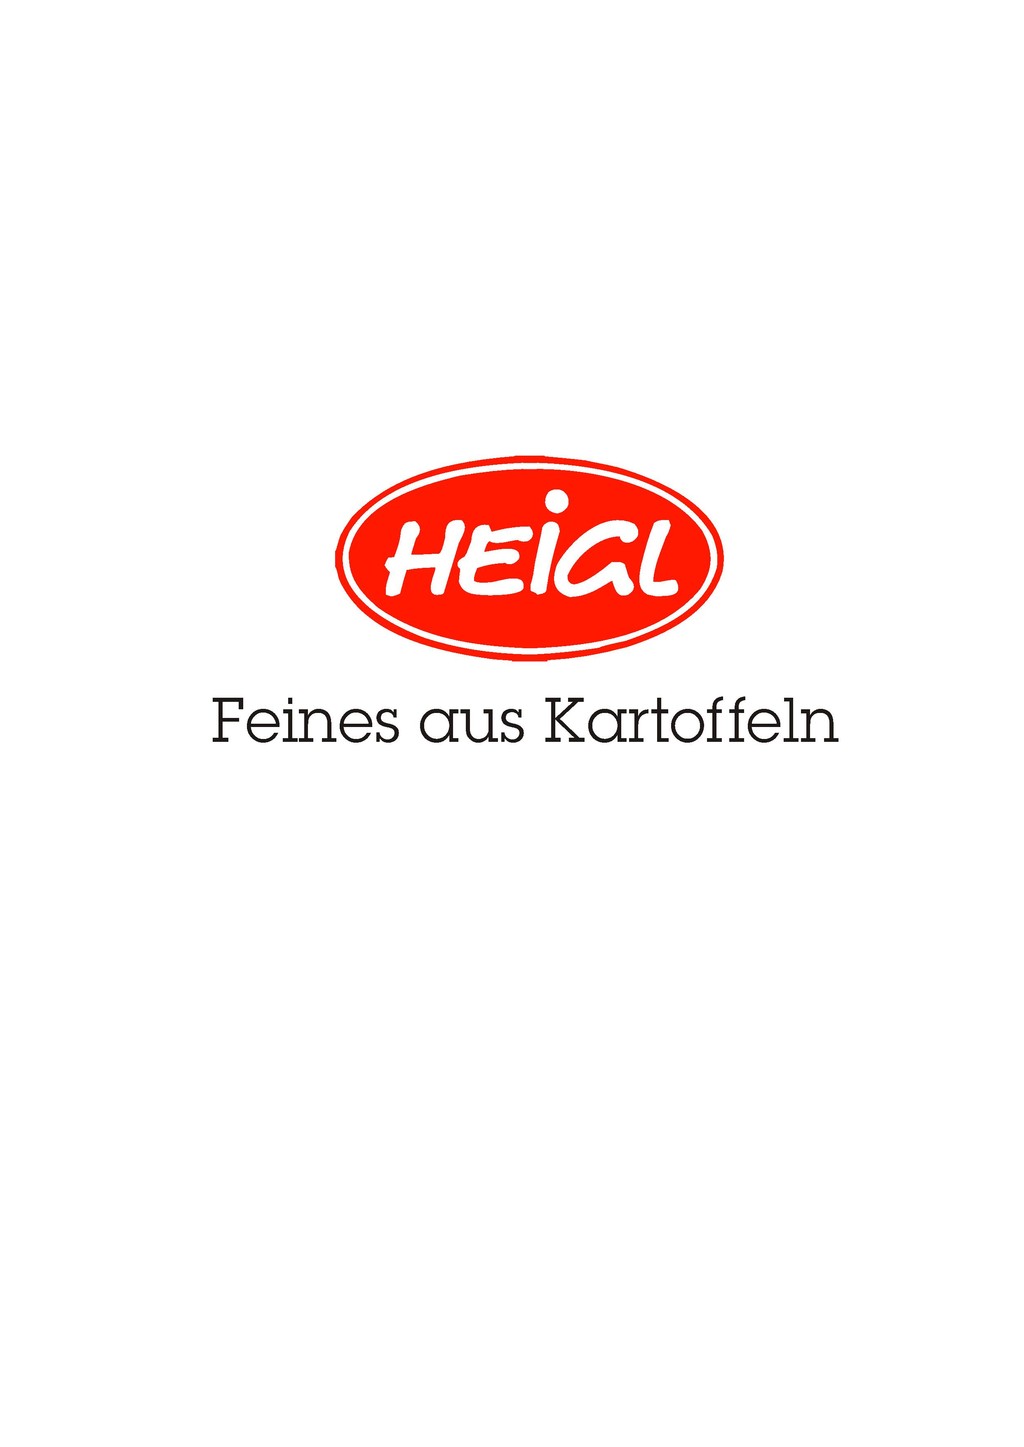 Heigl Kartoffelveredelungs GmbH